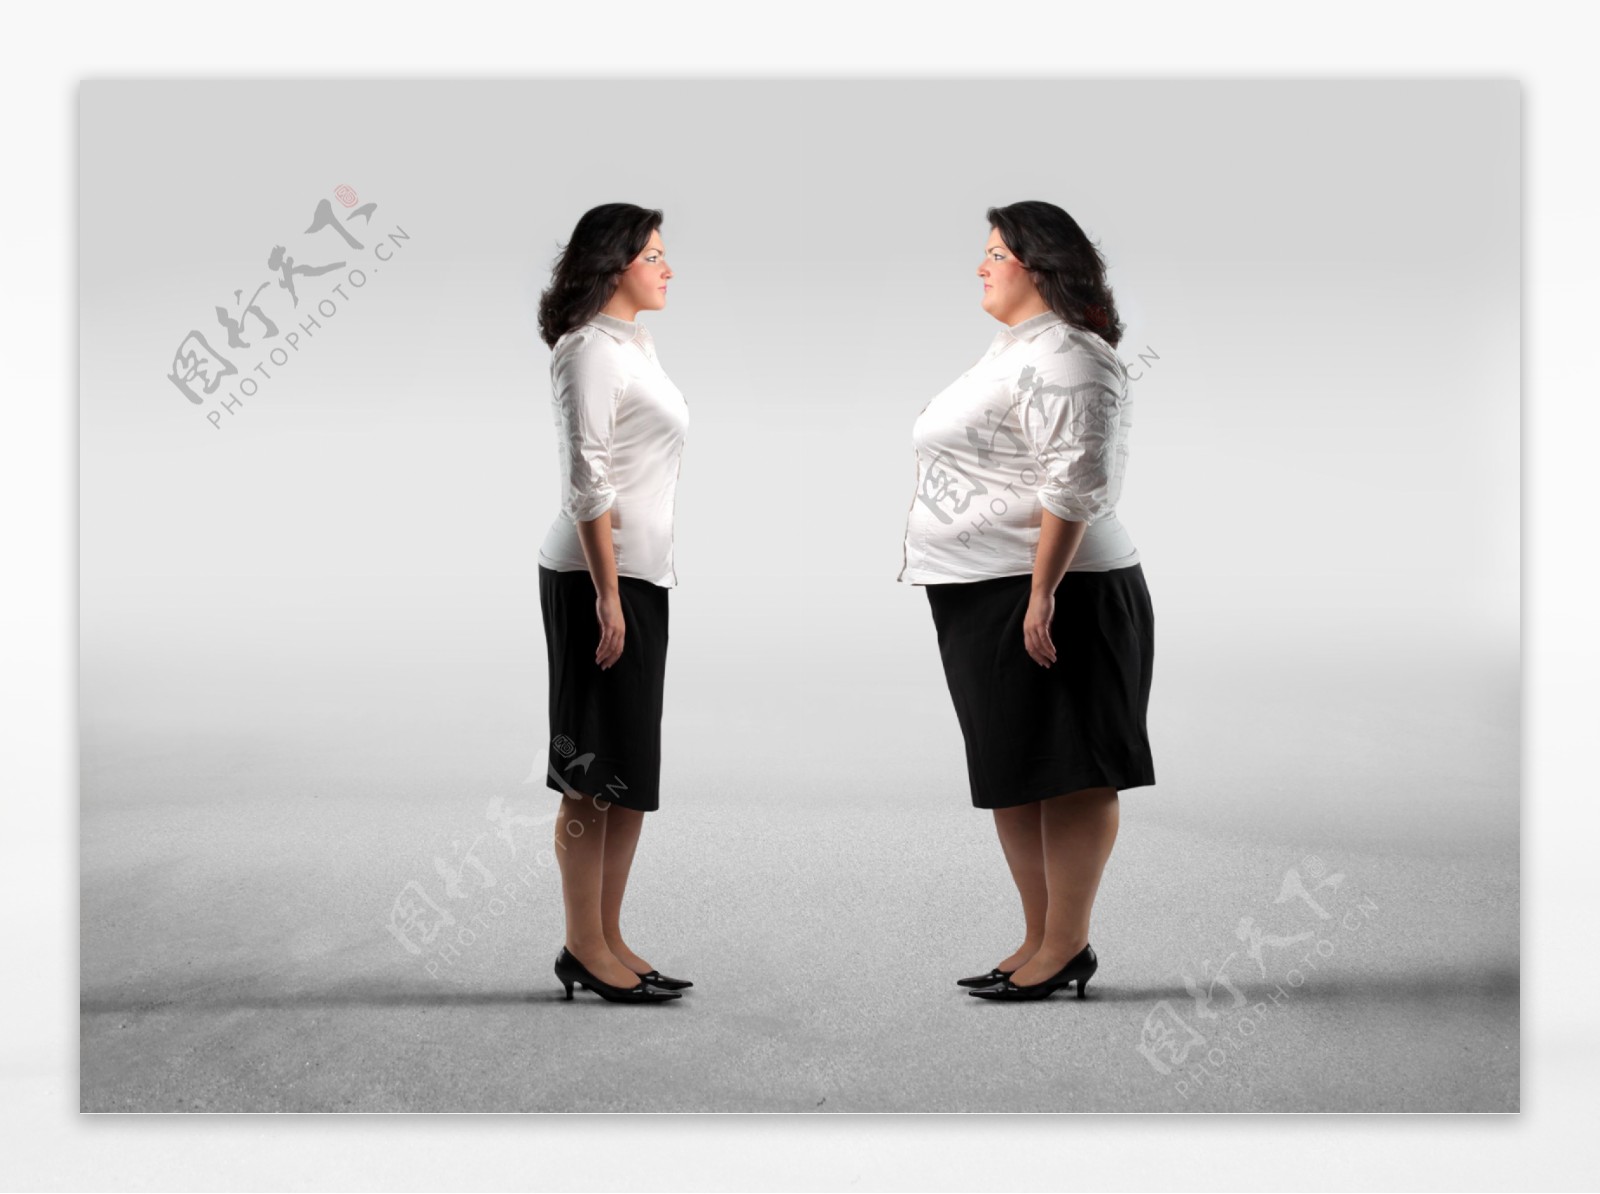 瘦身美女与胖女人图片